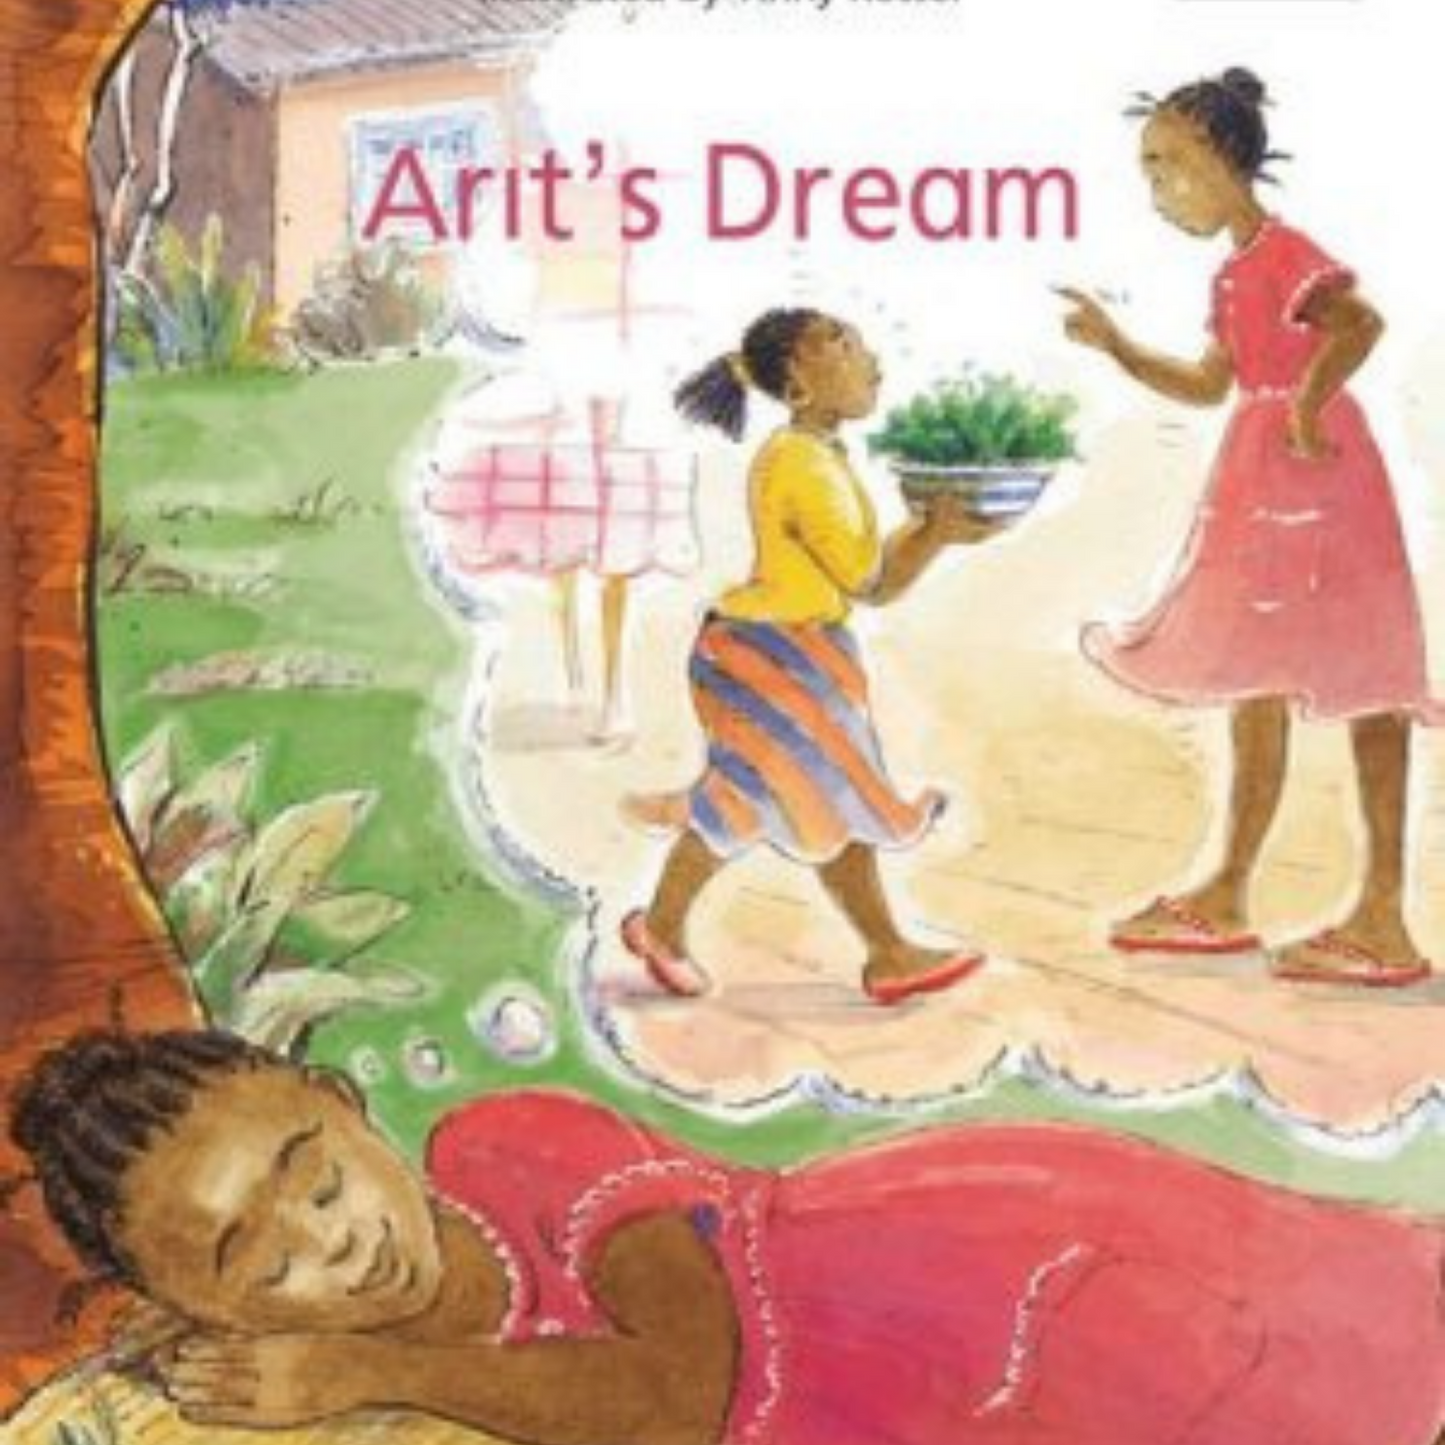 Arit's Dream